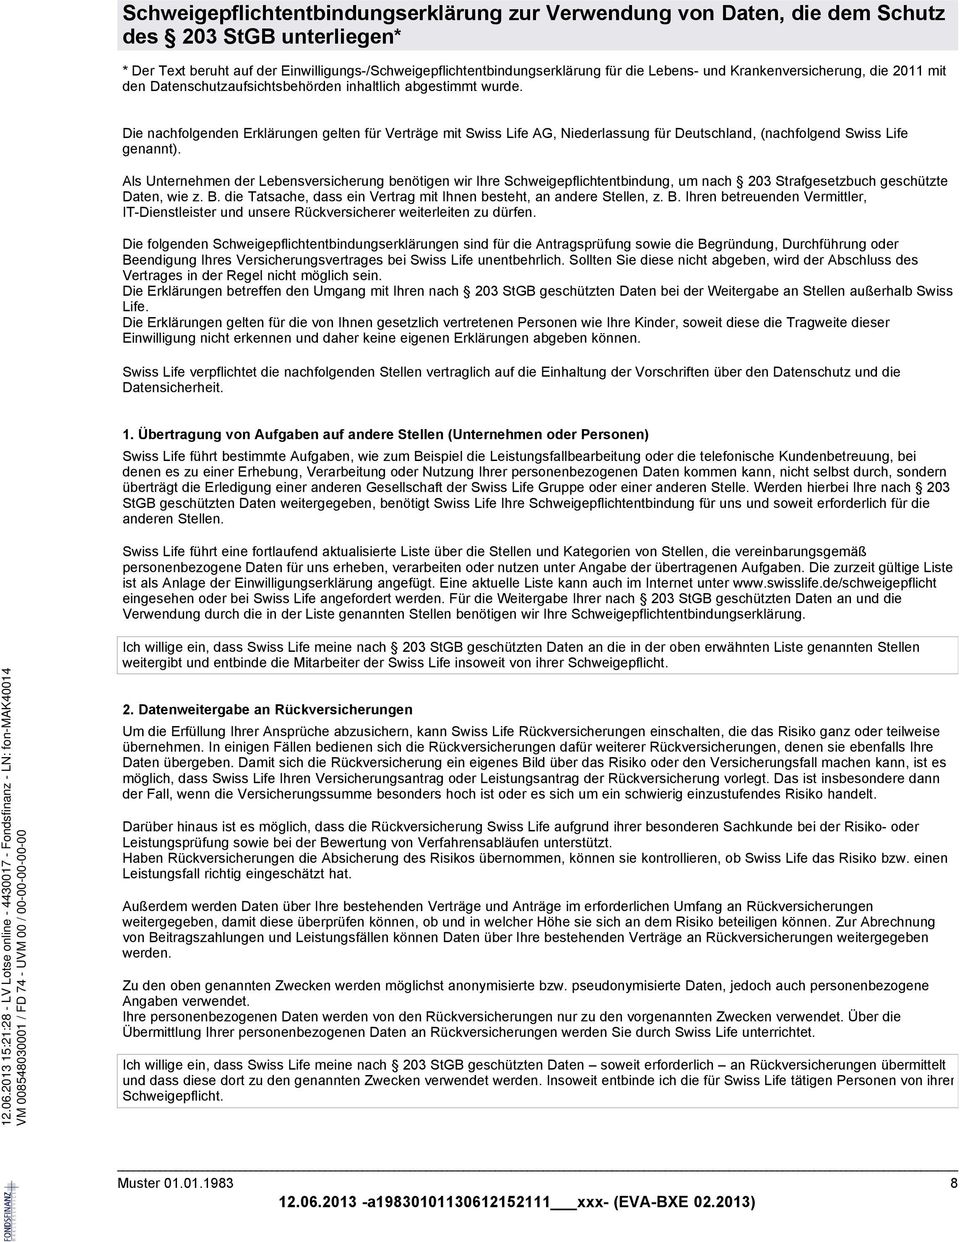 Die nachfolgenden Erklärungen gelten für Verträge mit Swiss Life AG, Niederlassung für Deutschland, (nachfolgend Swiss Life genannt).